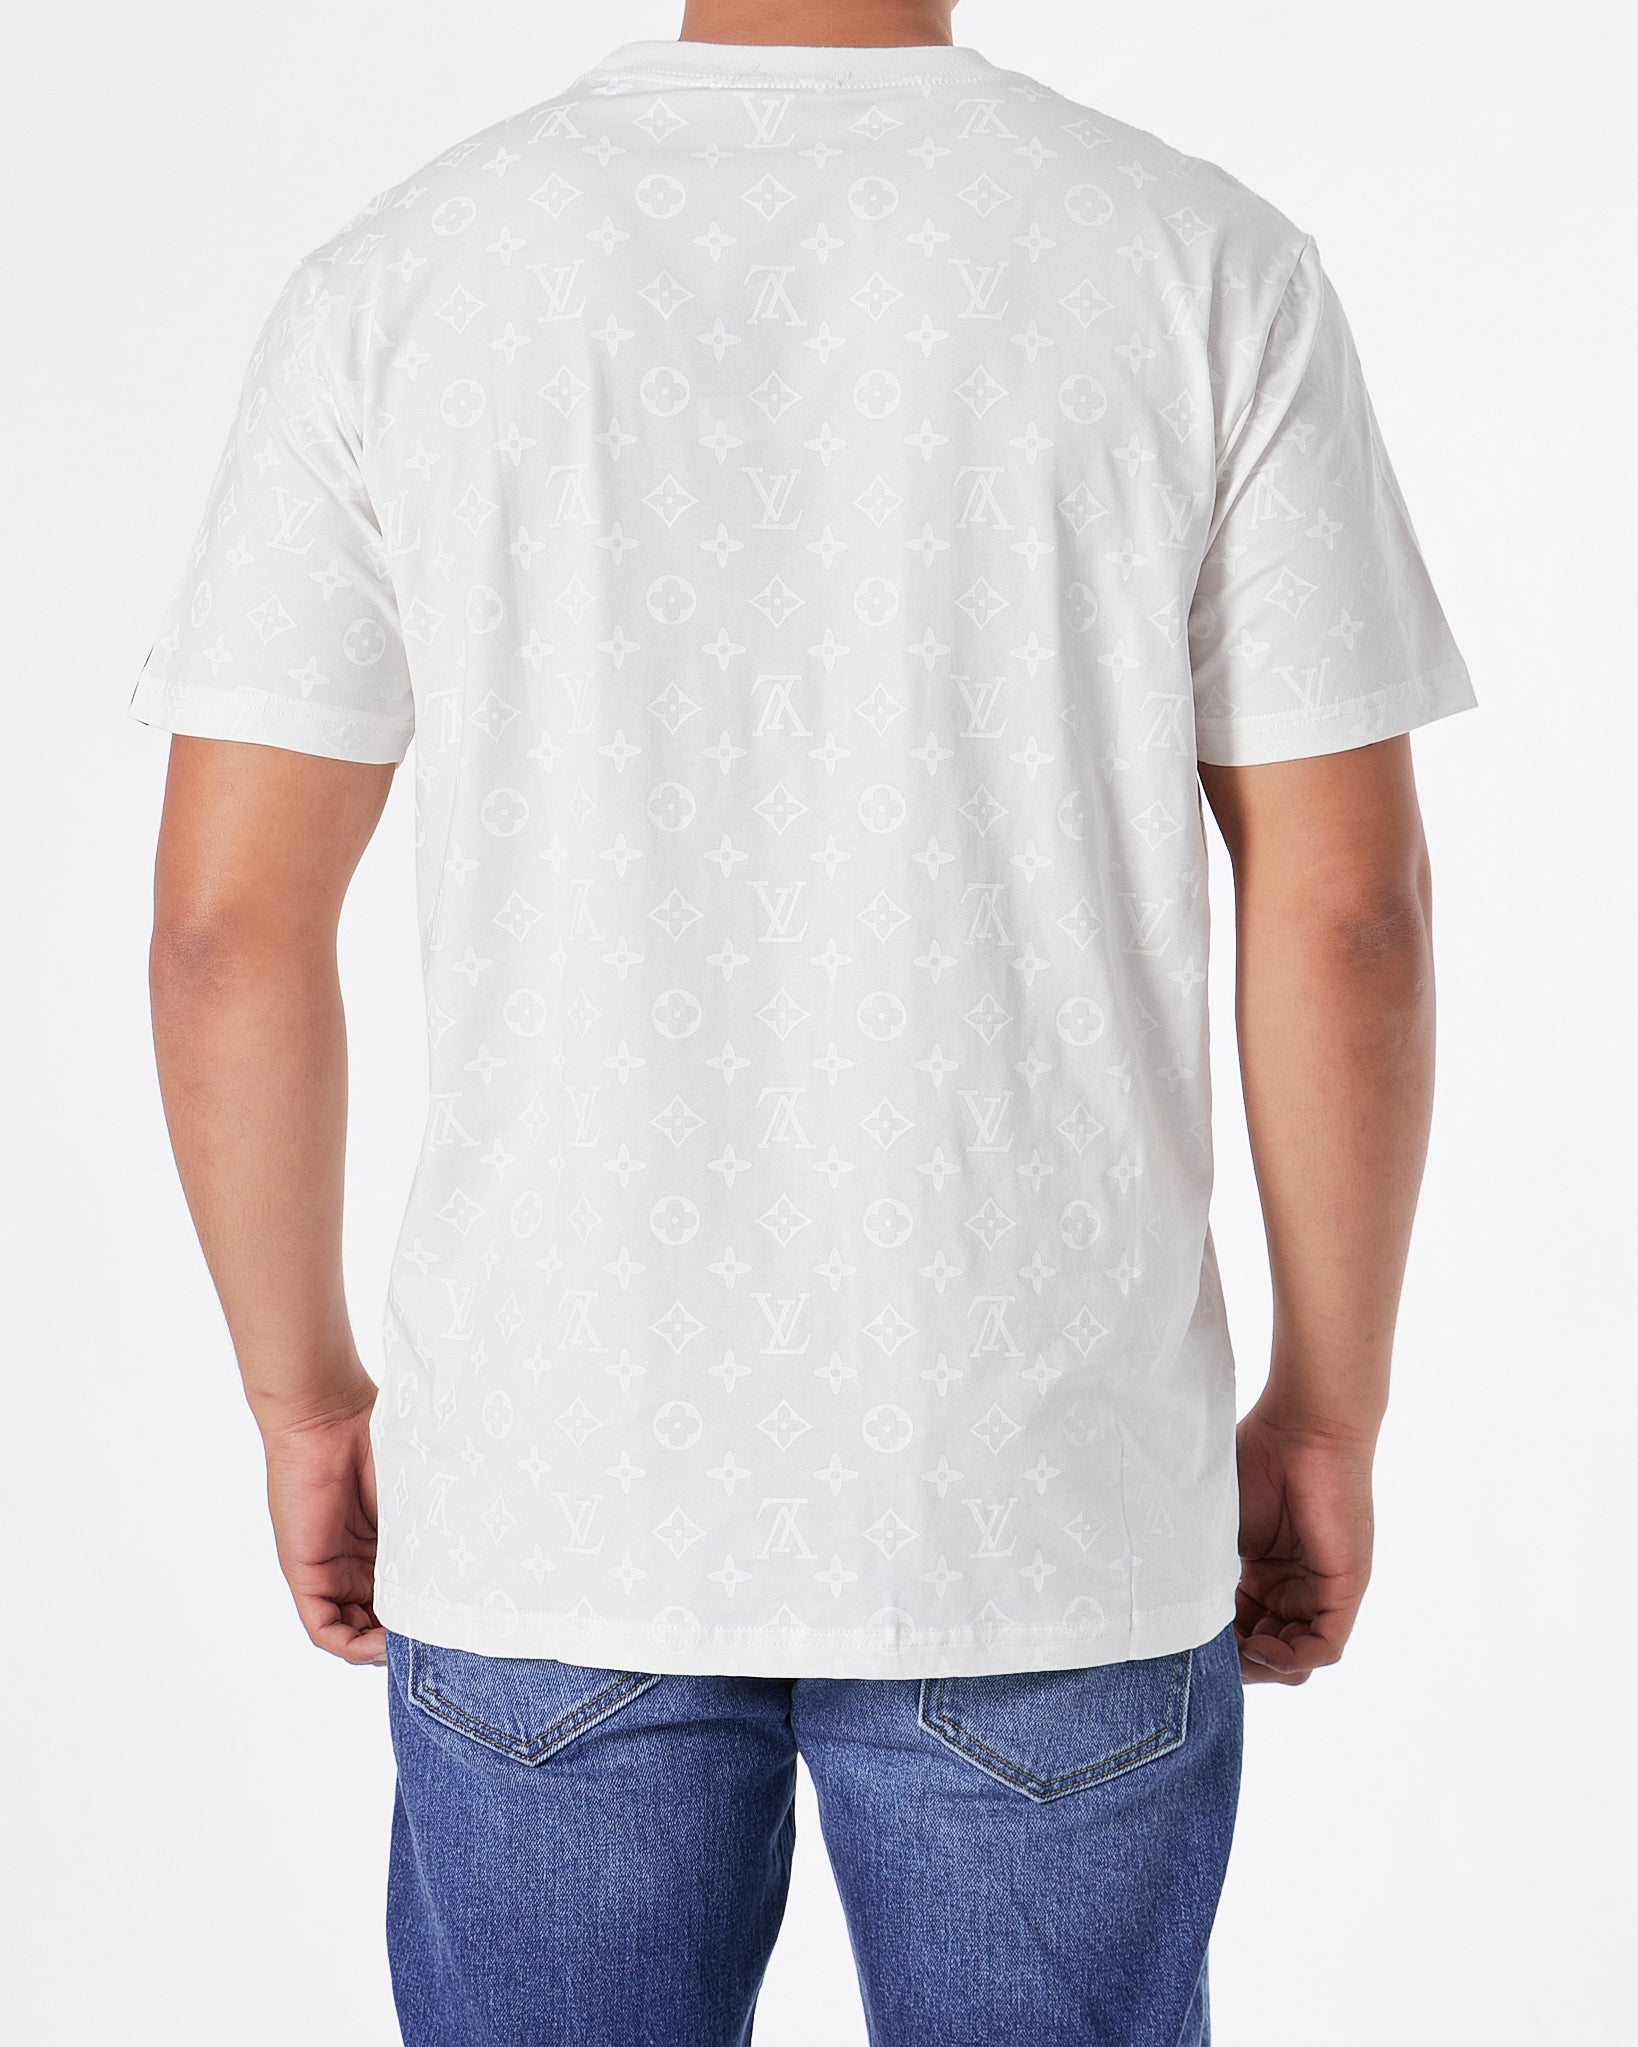 Louis Vuitton Monogram On Right Half White Polo Shirt - Tagotee